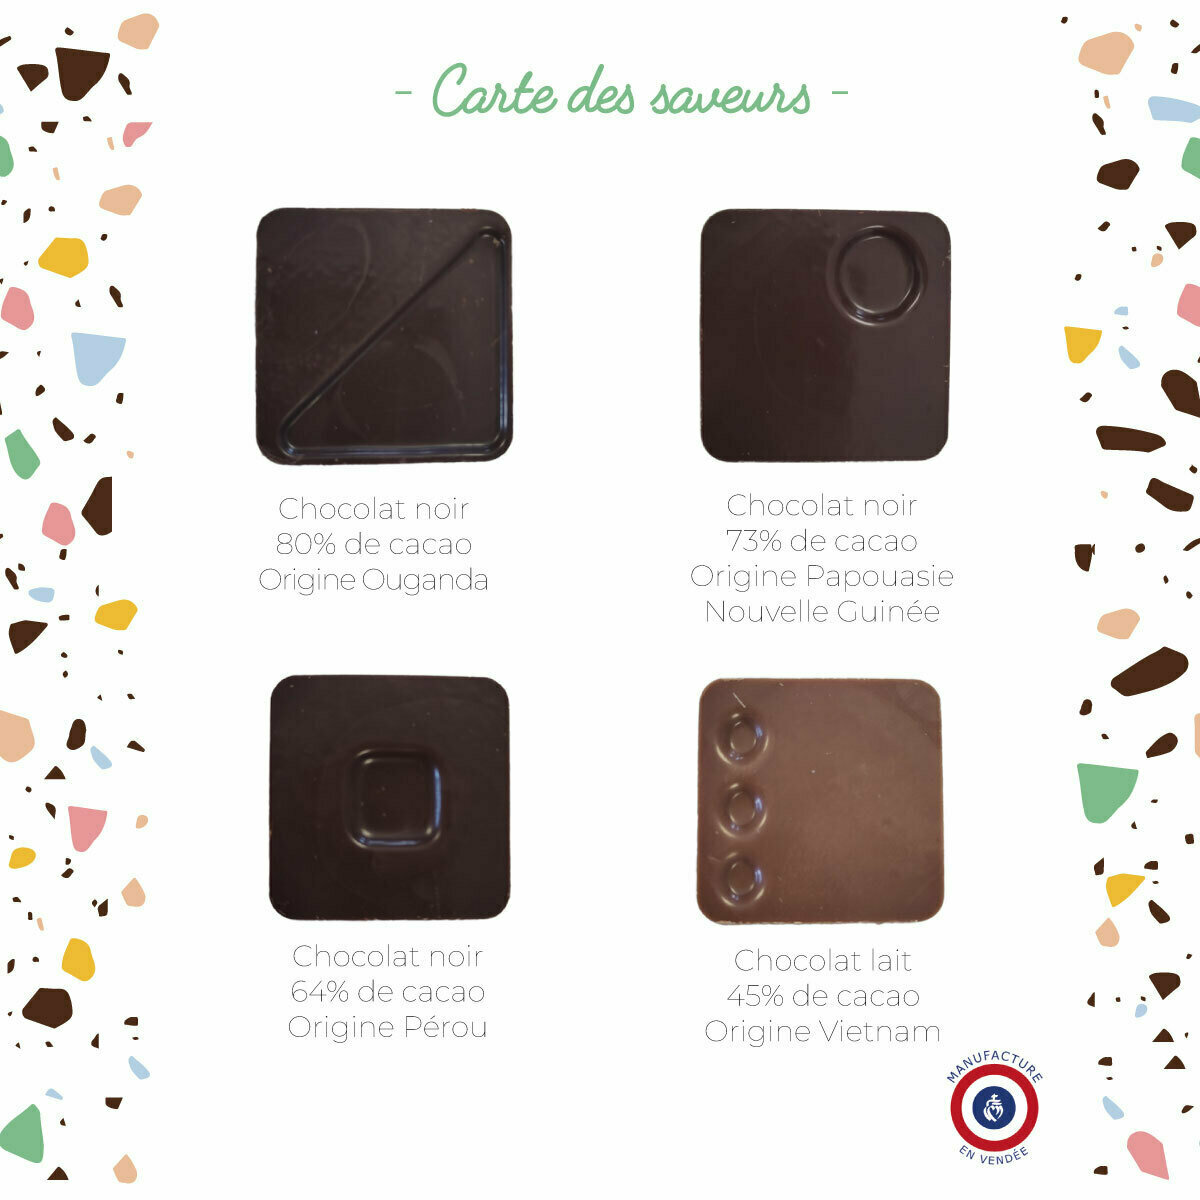 Carré de Chocolat Individuel de Qualité et Personnalisable Logo d'Entreprise